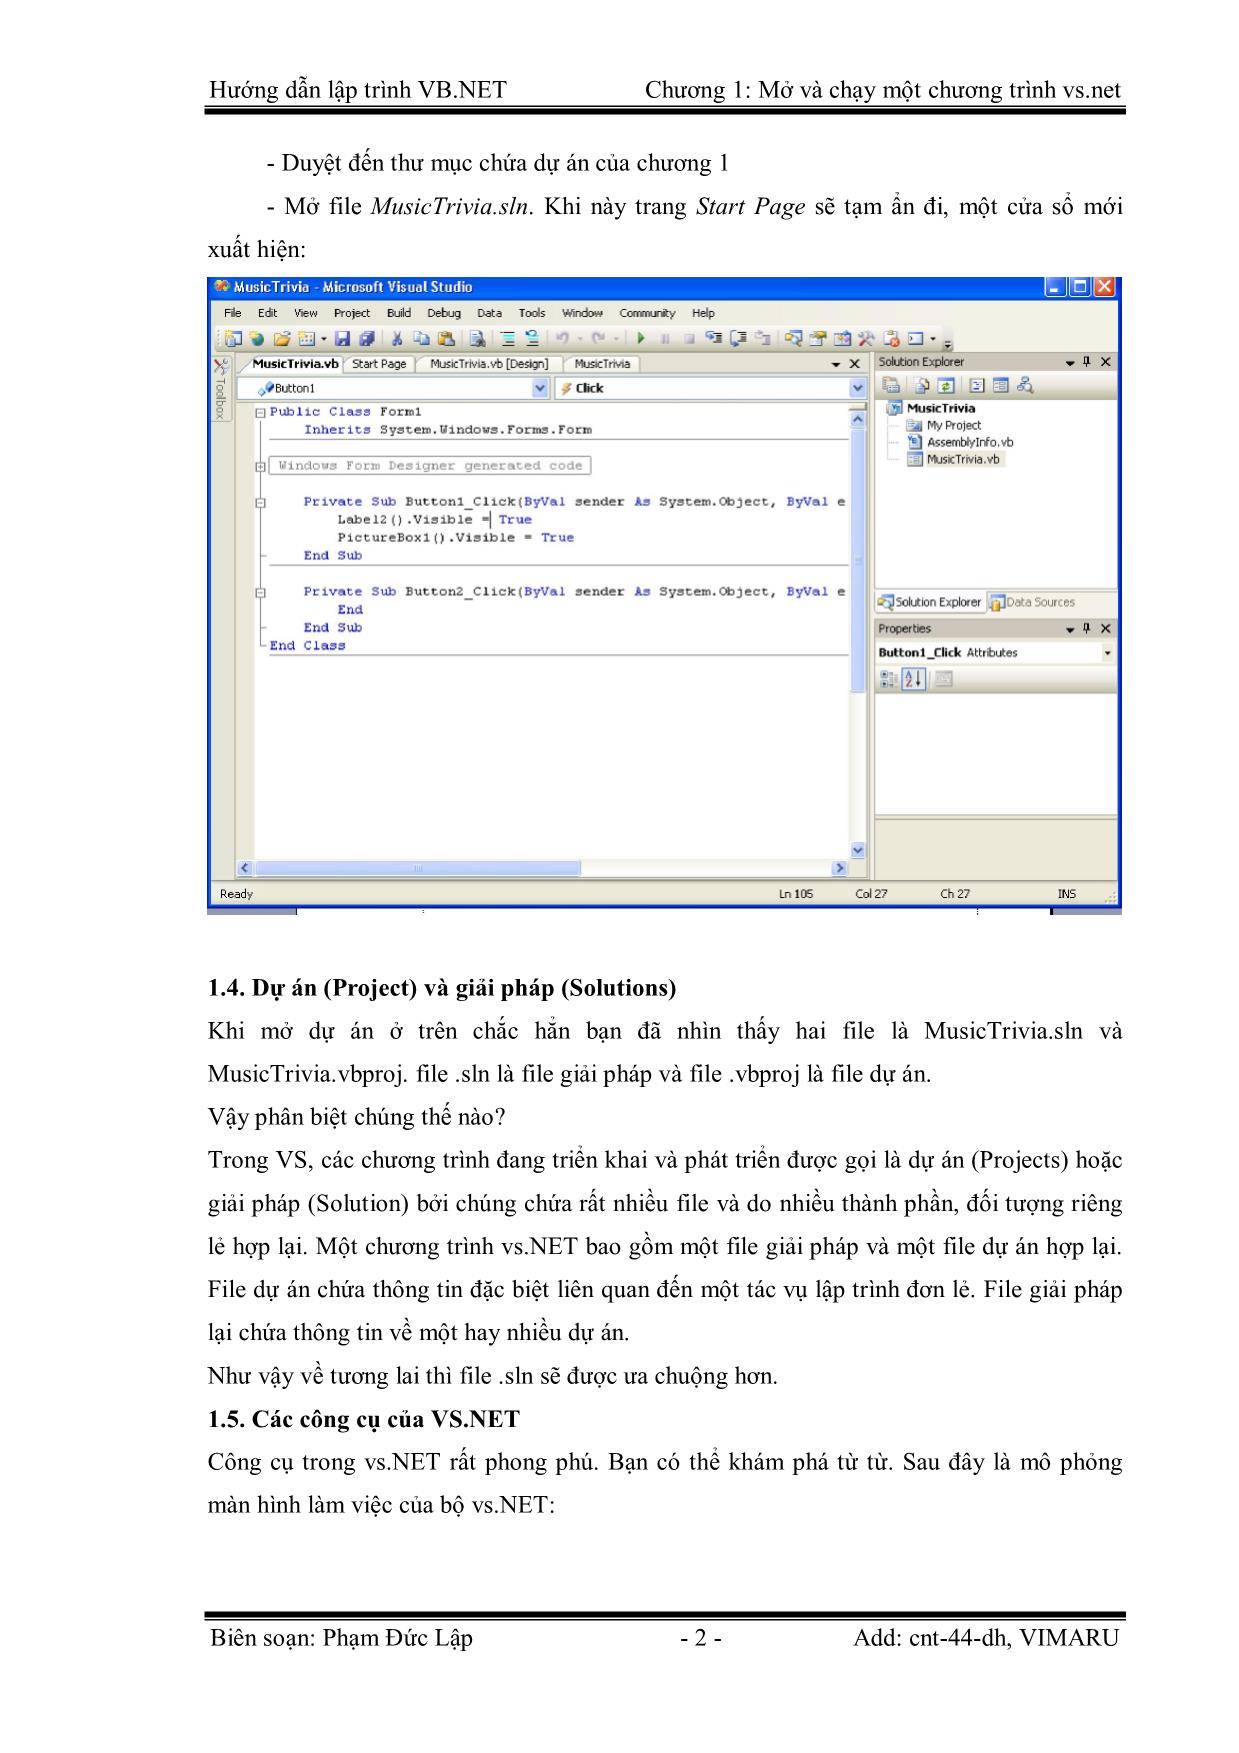 Giáo trình Hướng dẫn lập trình VB.NET - Chương 1: Mở và chạy một chương trình Visual Basic.NET - Phạm Đức Lập trang 2